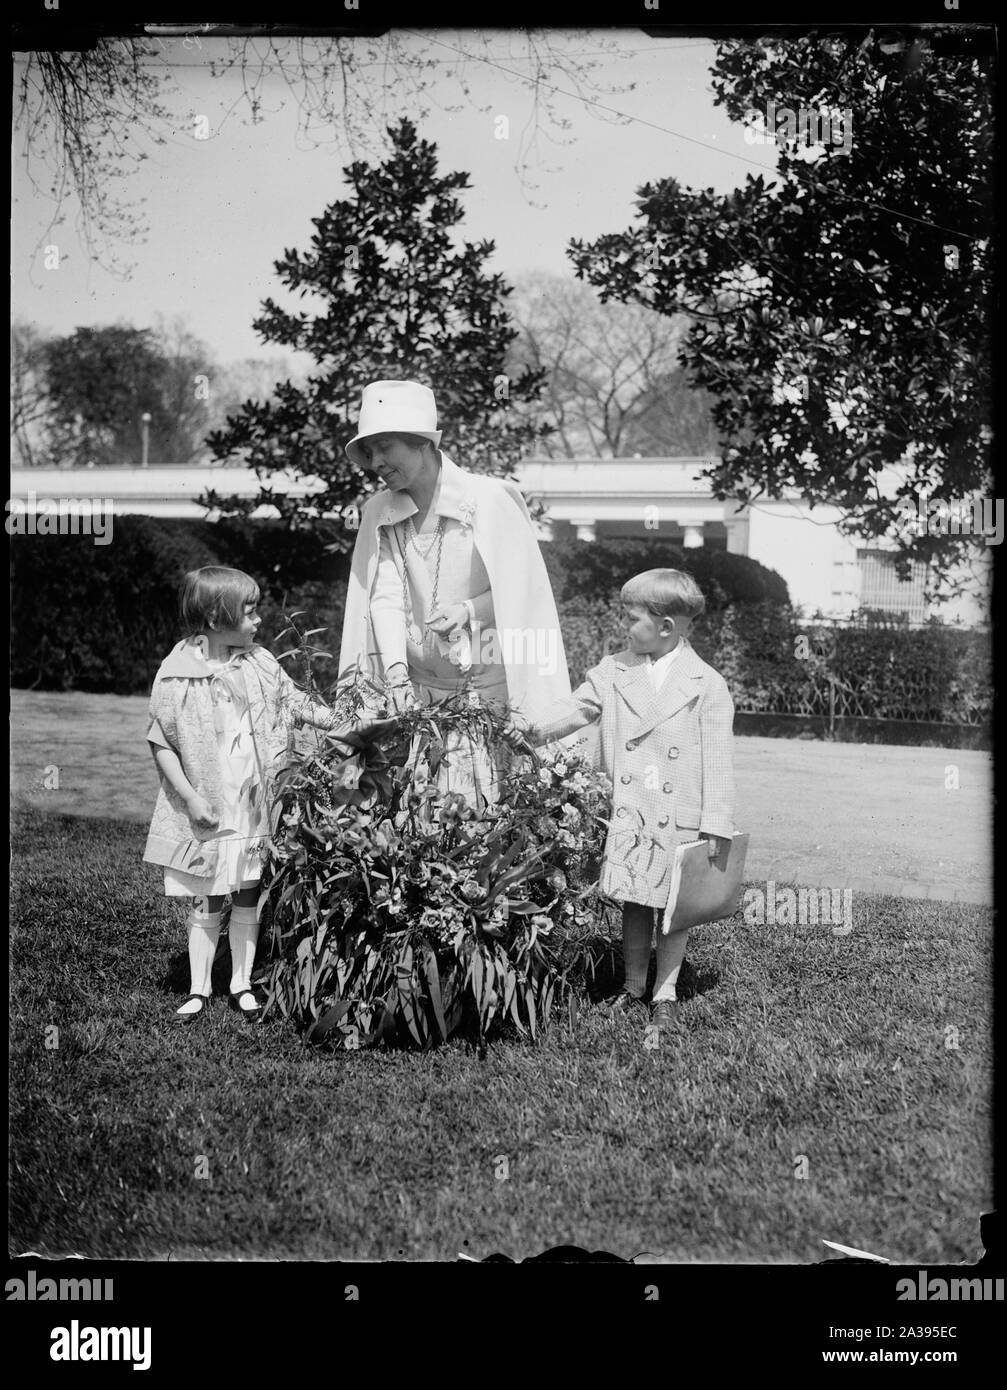 Les enfants de l'Armée du salut de Californie envoyer Mme Coolidge un cadeau de fleurs par avion. Un beau panier de fleurs envoyées par avion par les enfants de l'Armée du Salut Accueil à Lytton Springs, en Californie, a été présenté à Mme Coolidge à la Maison Blanche aujourd'hui. Ketha Holtz, fille d'Staff-Captain Ernest R. Holtz, Potomac Commandant de Division de l'Armée du Salut à Washington et Robert Rose, fils de l'Ensign Robert Rose de l'Armée du Salut, sont indiquées la présentation qui comprenait également une lecture du message : Chère Madame Coolidge : Nous vous faisons parvenir ces fleurs parce que nous vous aimons Banque D'Images